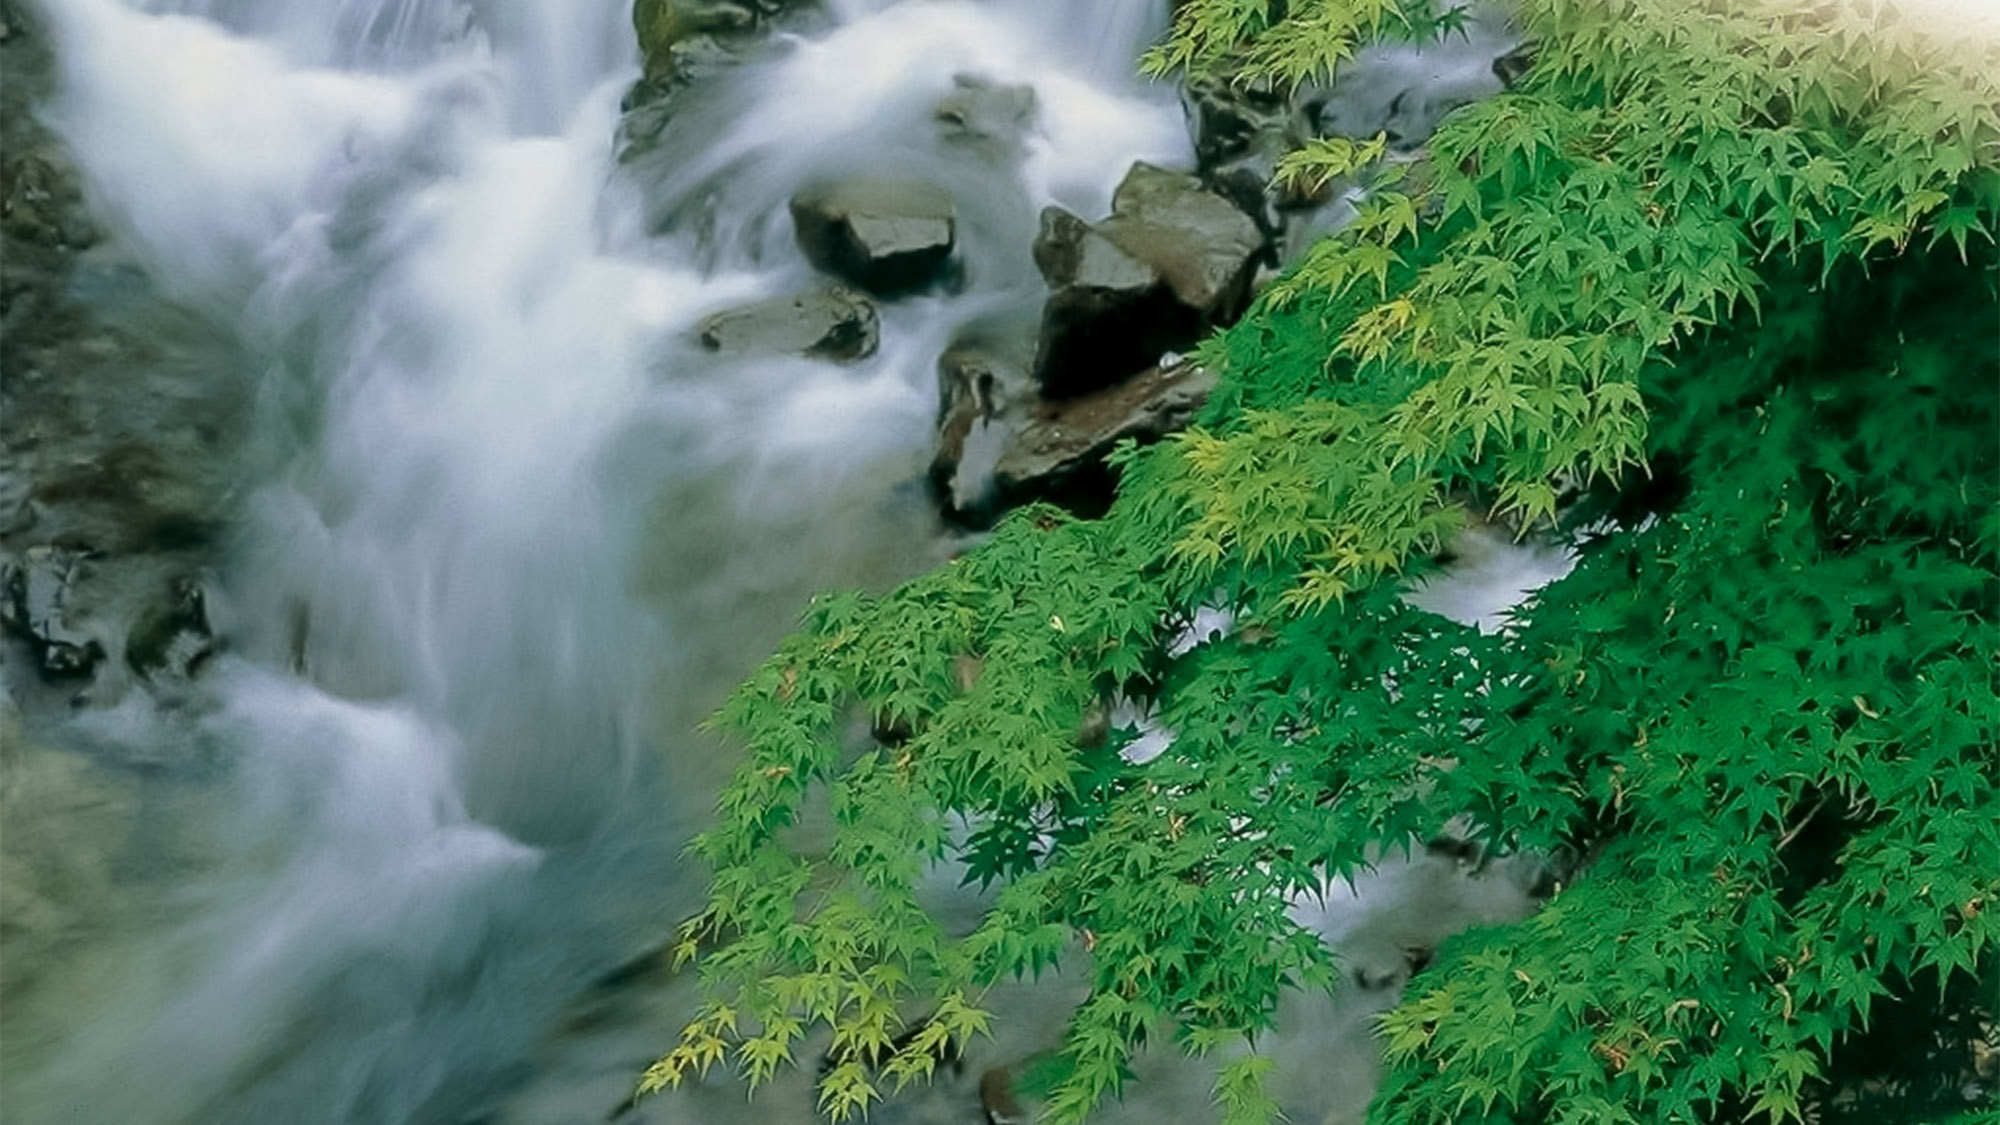 ・【風景】野迫川村の渓流から涼しいせせらぎの音が聞こえてくる♪